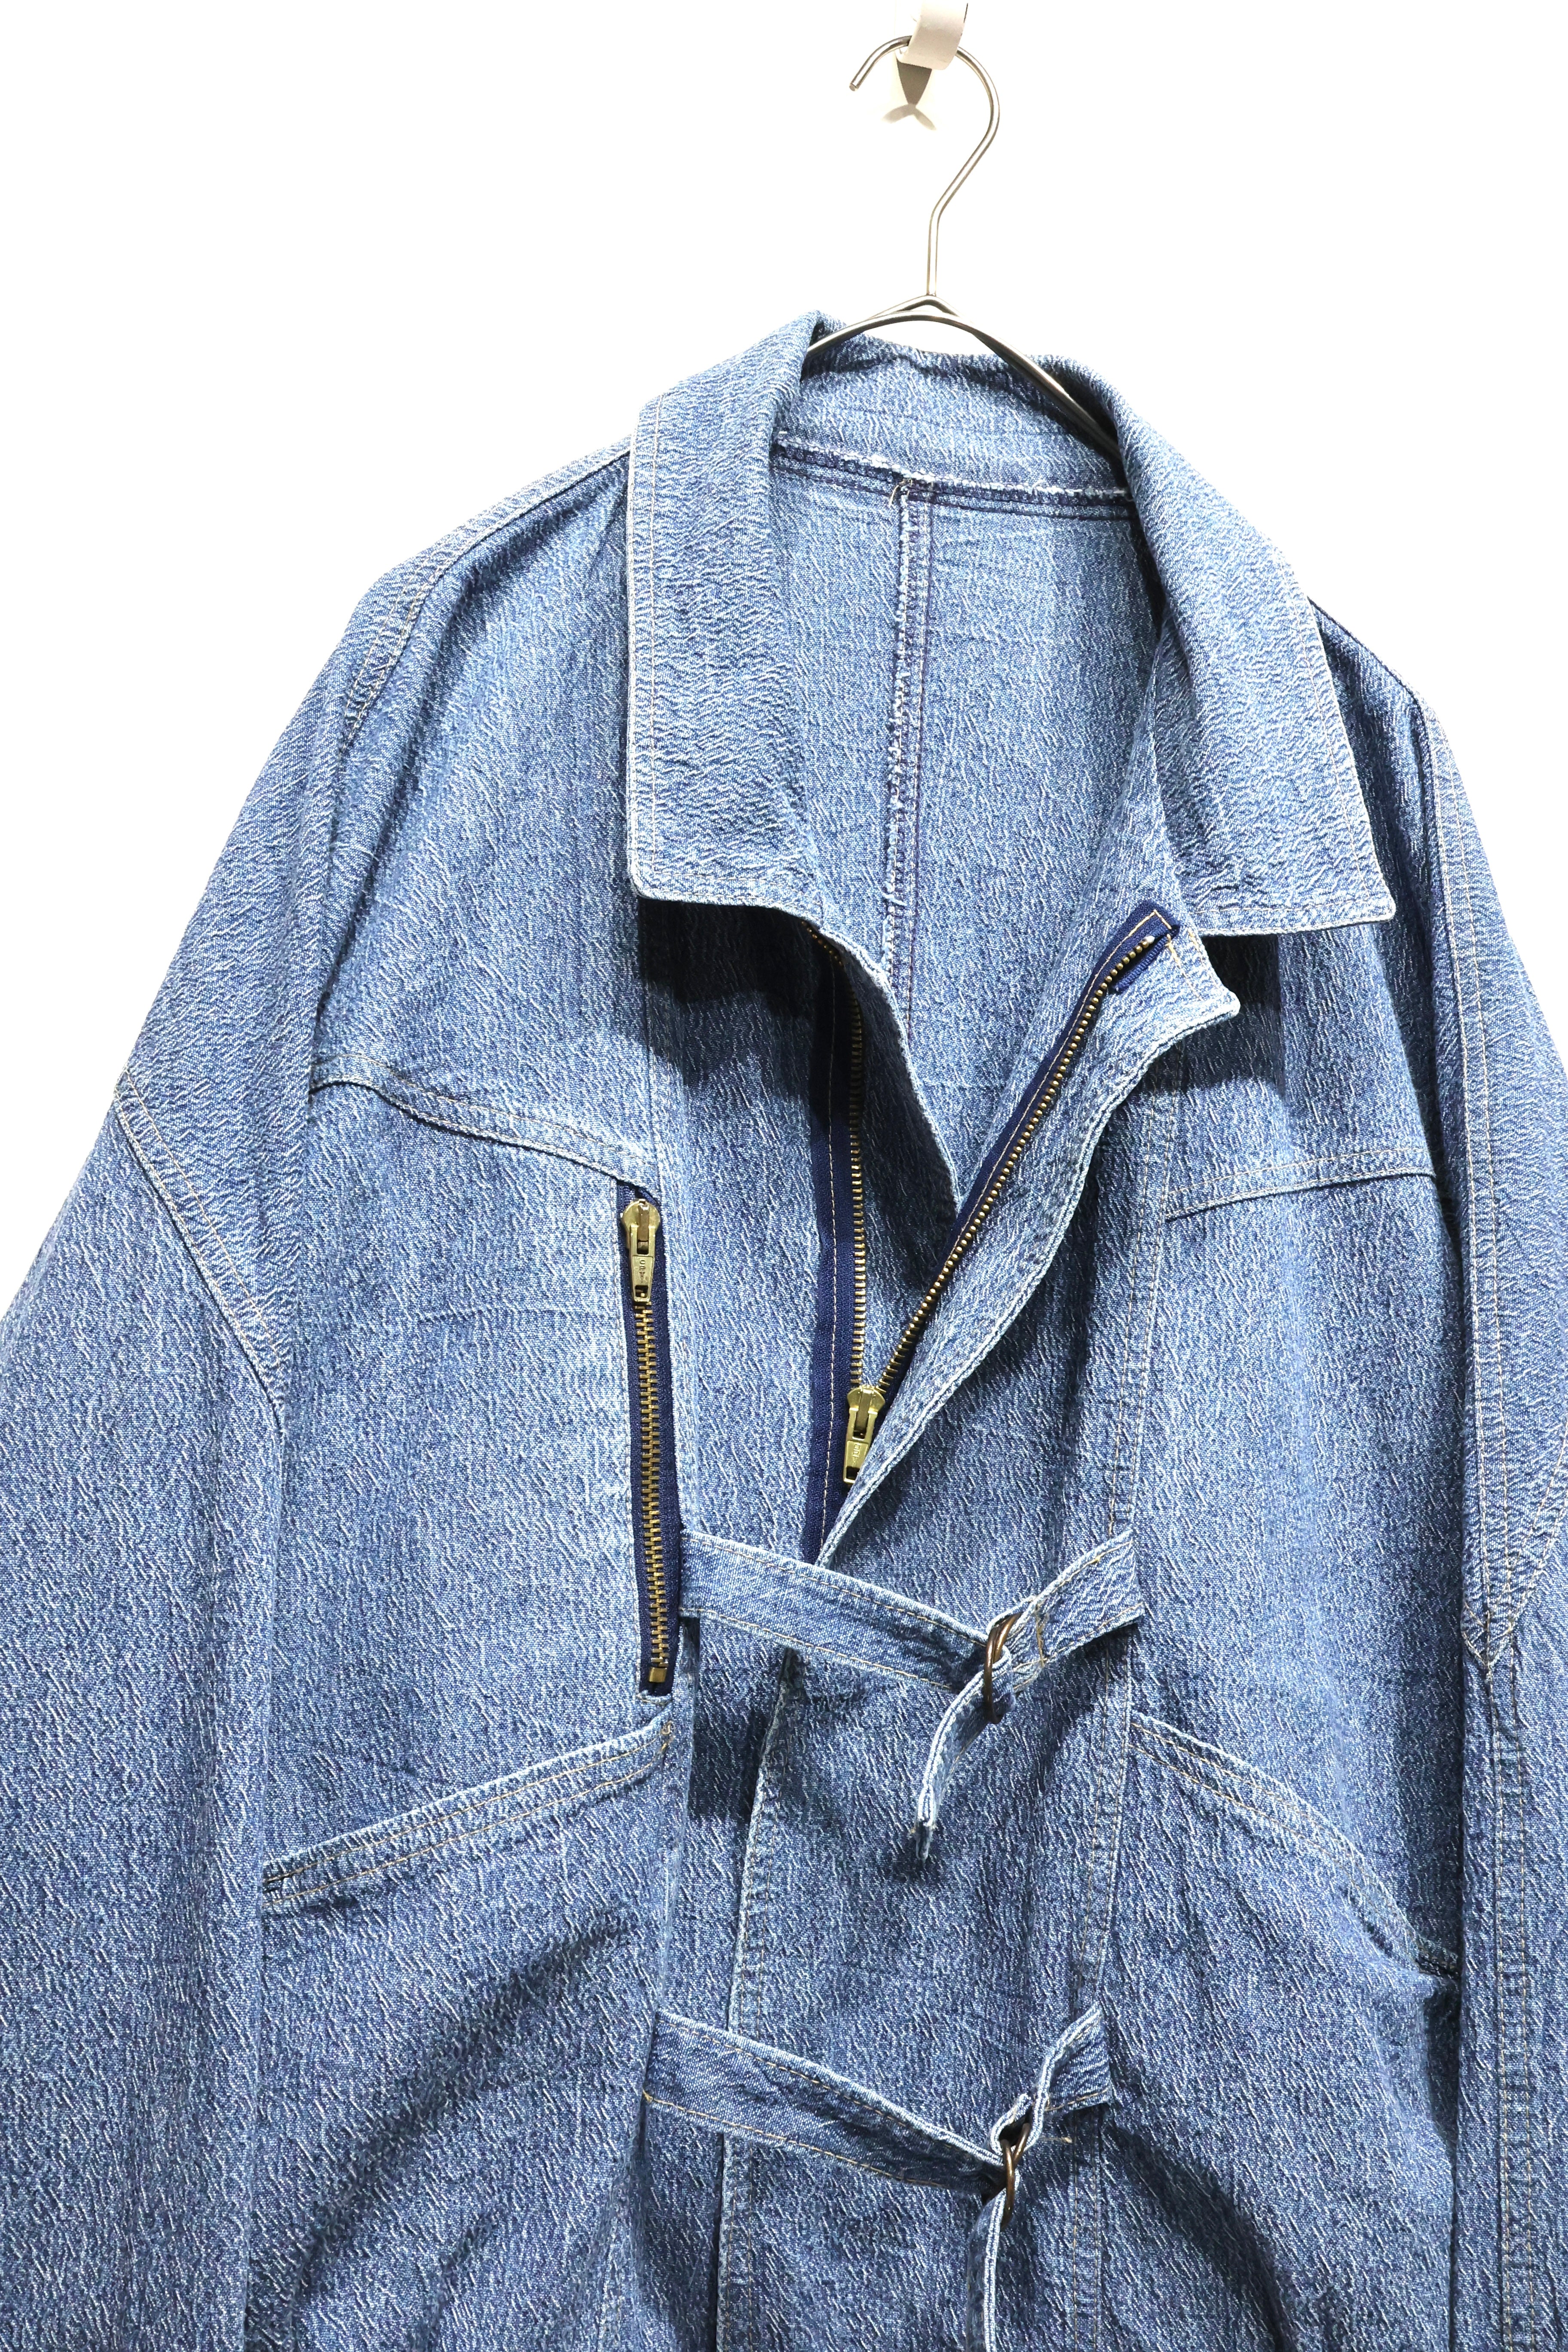 80's cotton denim jacket